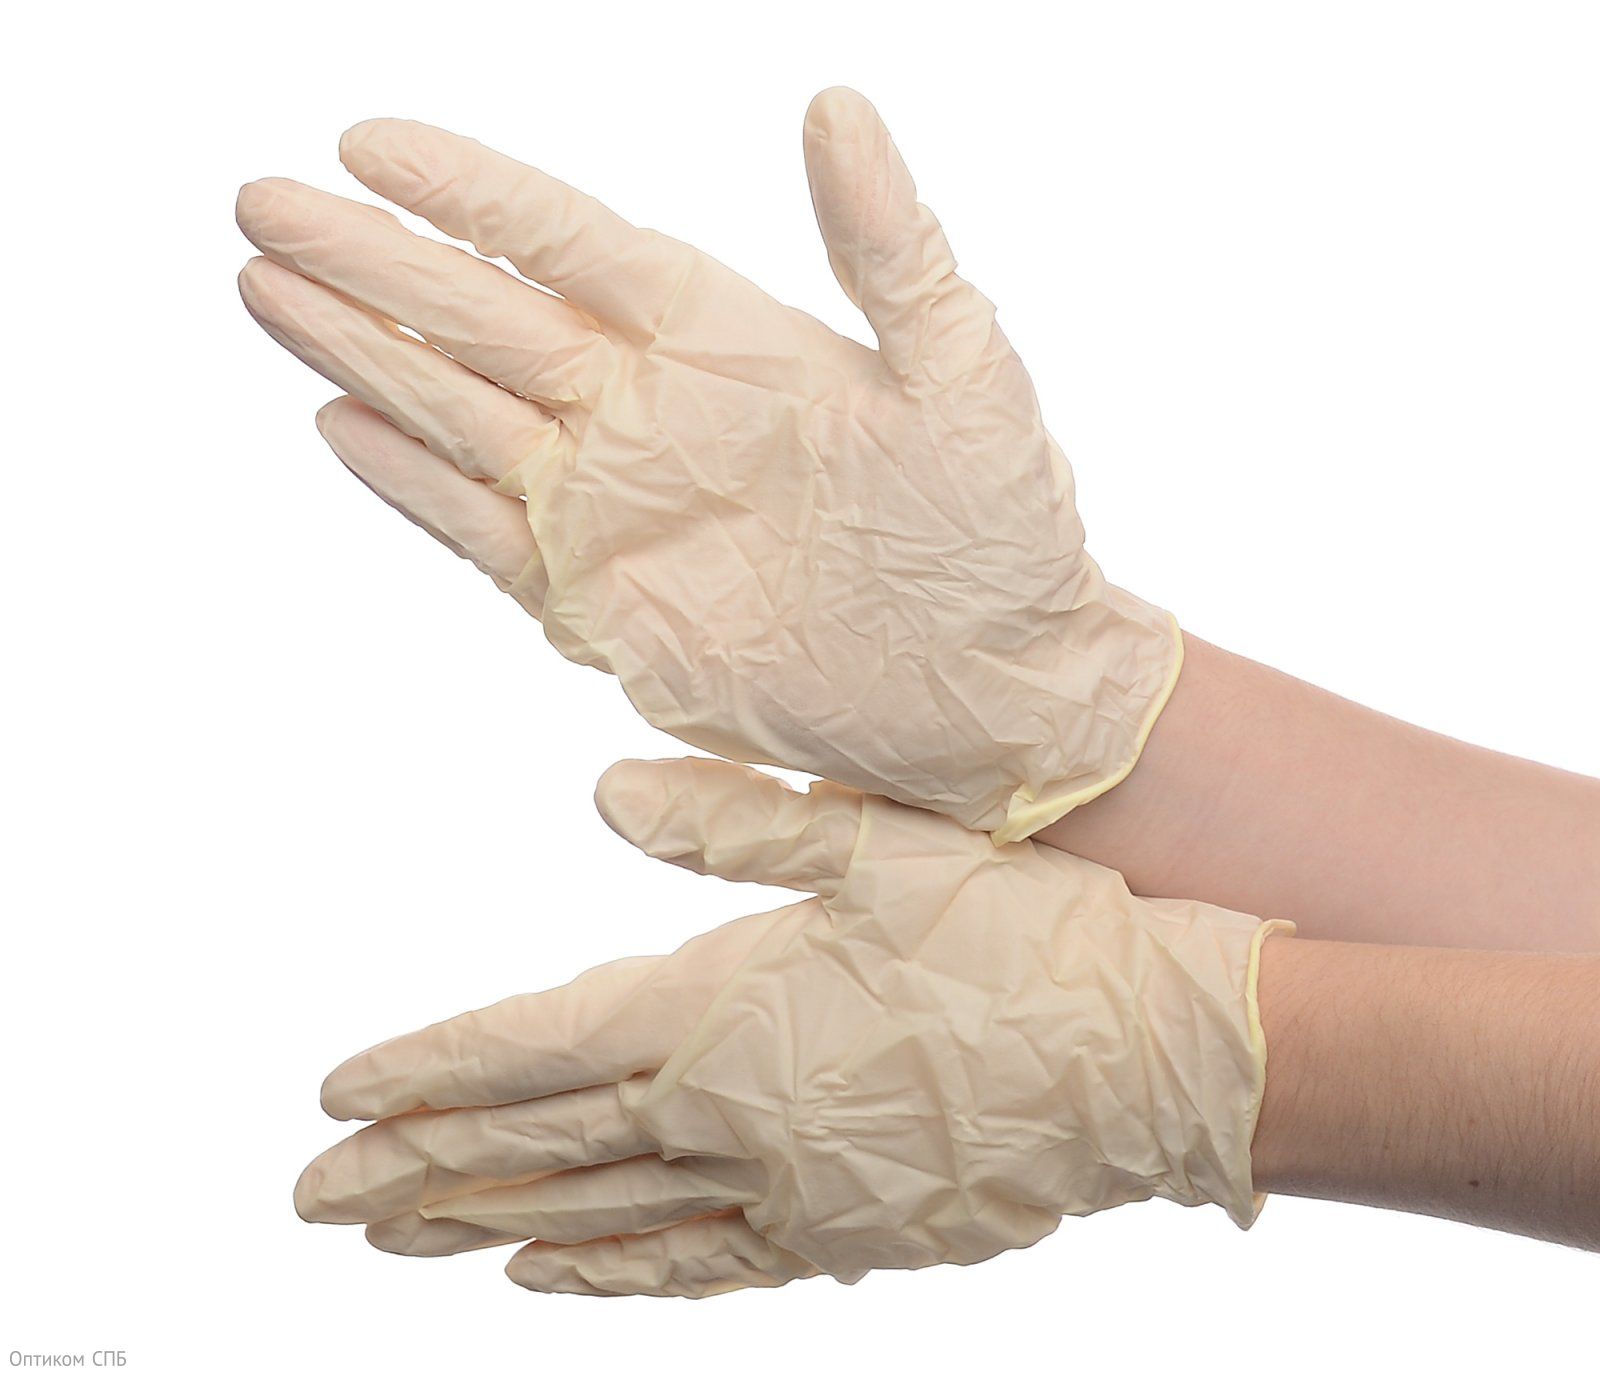 Перчатки латексные Bi-safe неопудренные изготовлены из натурального латекса. Надежно защищают руки от попадания на кожу воды, грязи, химических моющих средств, а также от механических повреждений. Тонкие, не сковывают движение руки, обеспечивают прекрасную чувствительность пальцев. Эластичные, хорошо тянутся, плотно облегают руку. Имеют повышенную прочность, устойчивые к разрыву и проколу. Размер М. Цвет белый. В упаковке 100 штук.